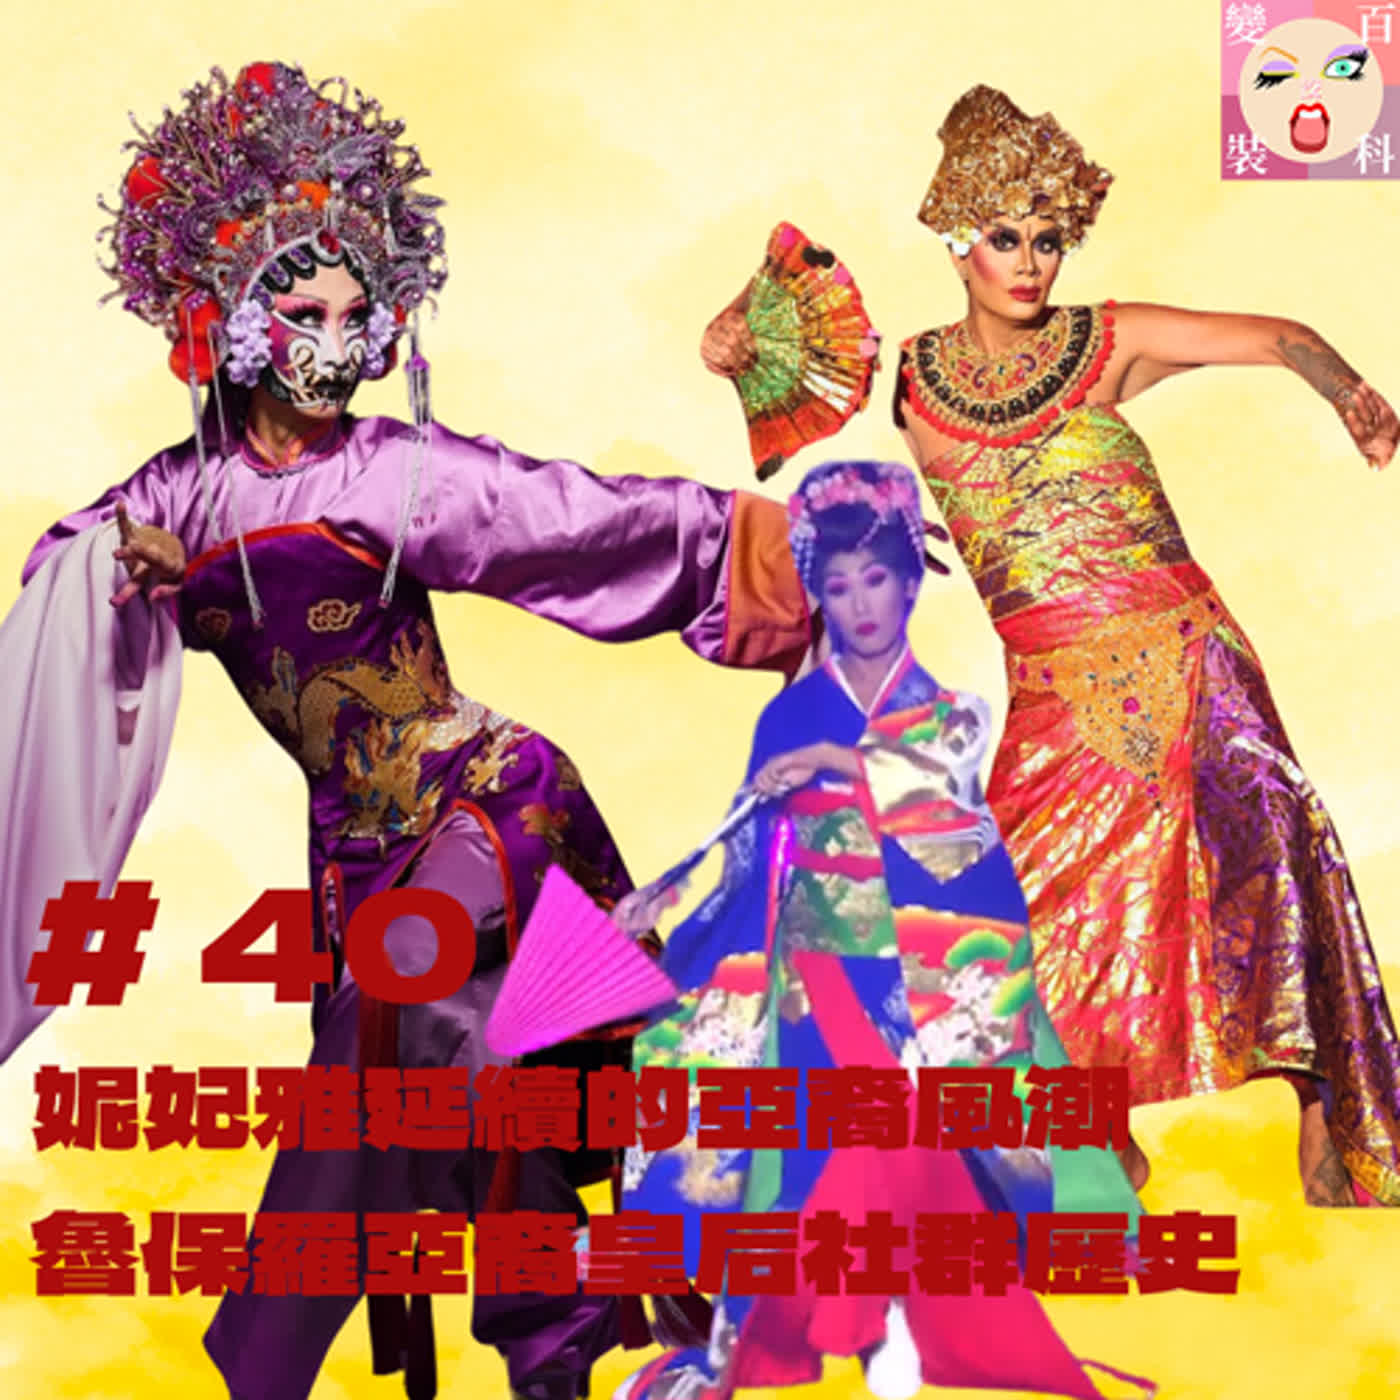 # 40 妮妃雅延續的亞裔風潮，魯保羅亞裔皇后社群歷史